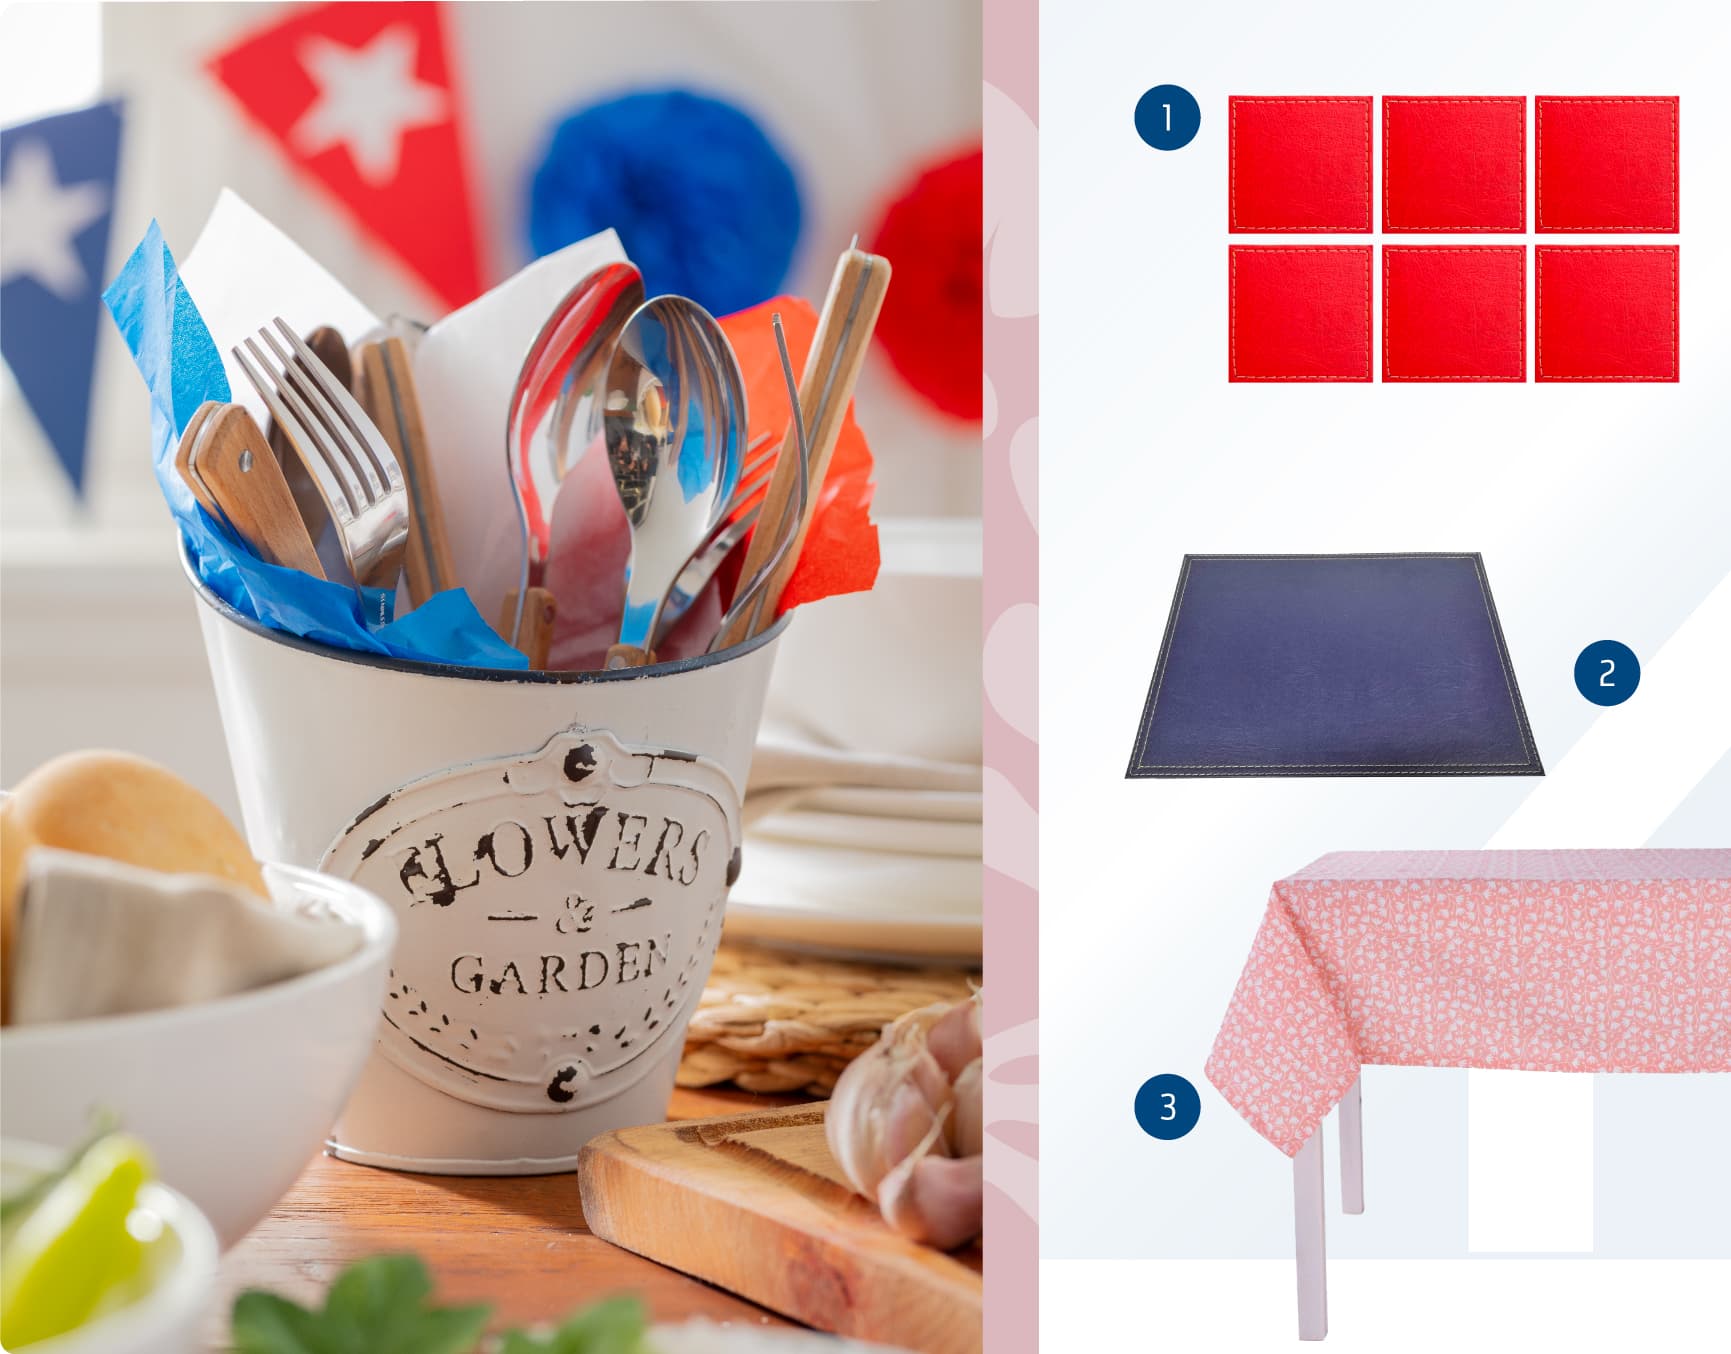 Moodboard de textiles para mesa de colores rojo y azules disponibles en Sodimac.